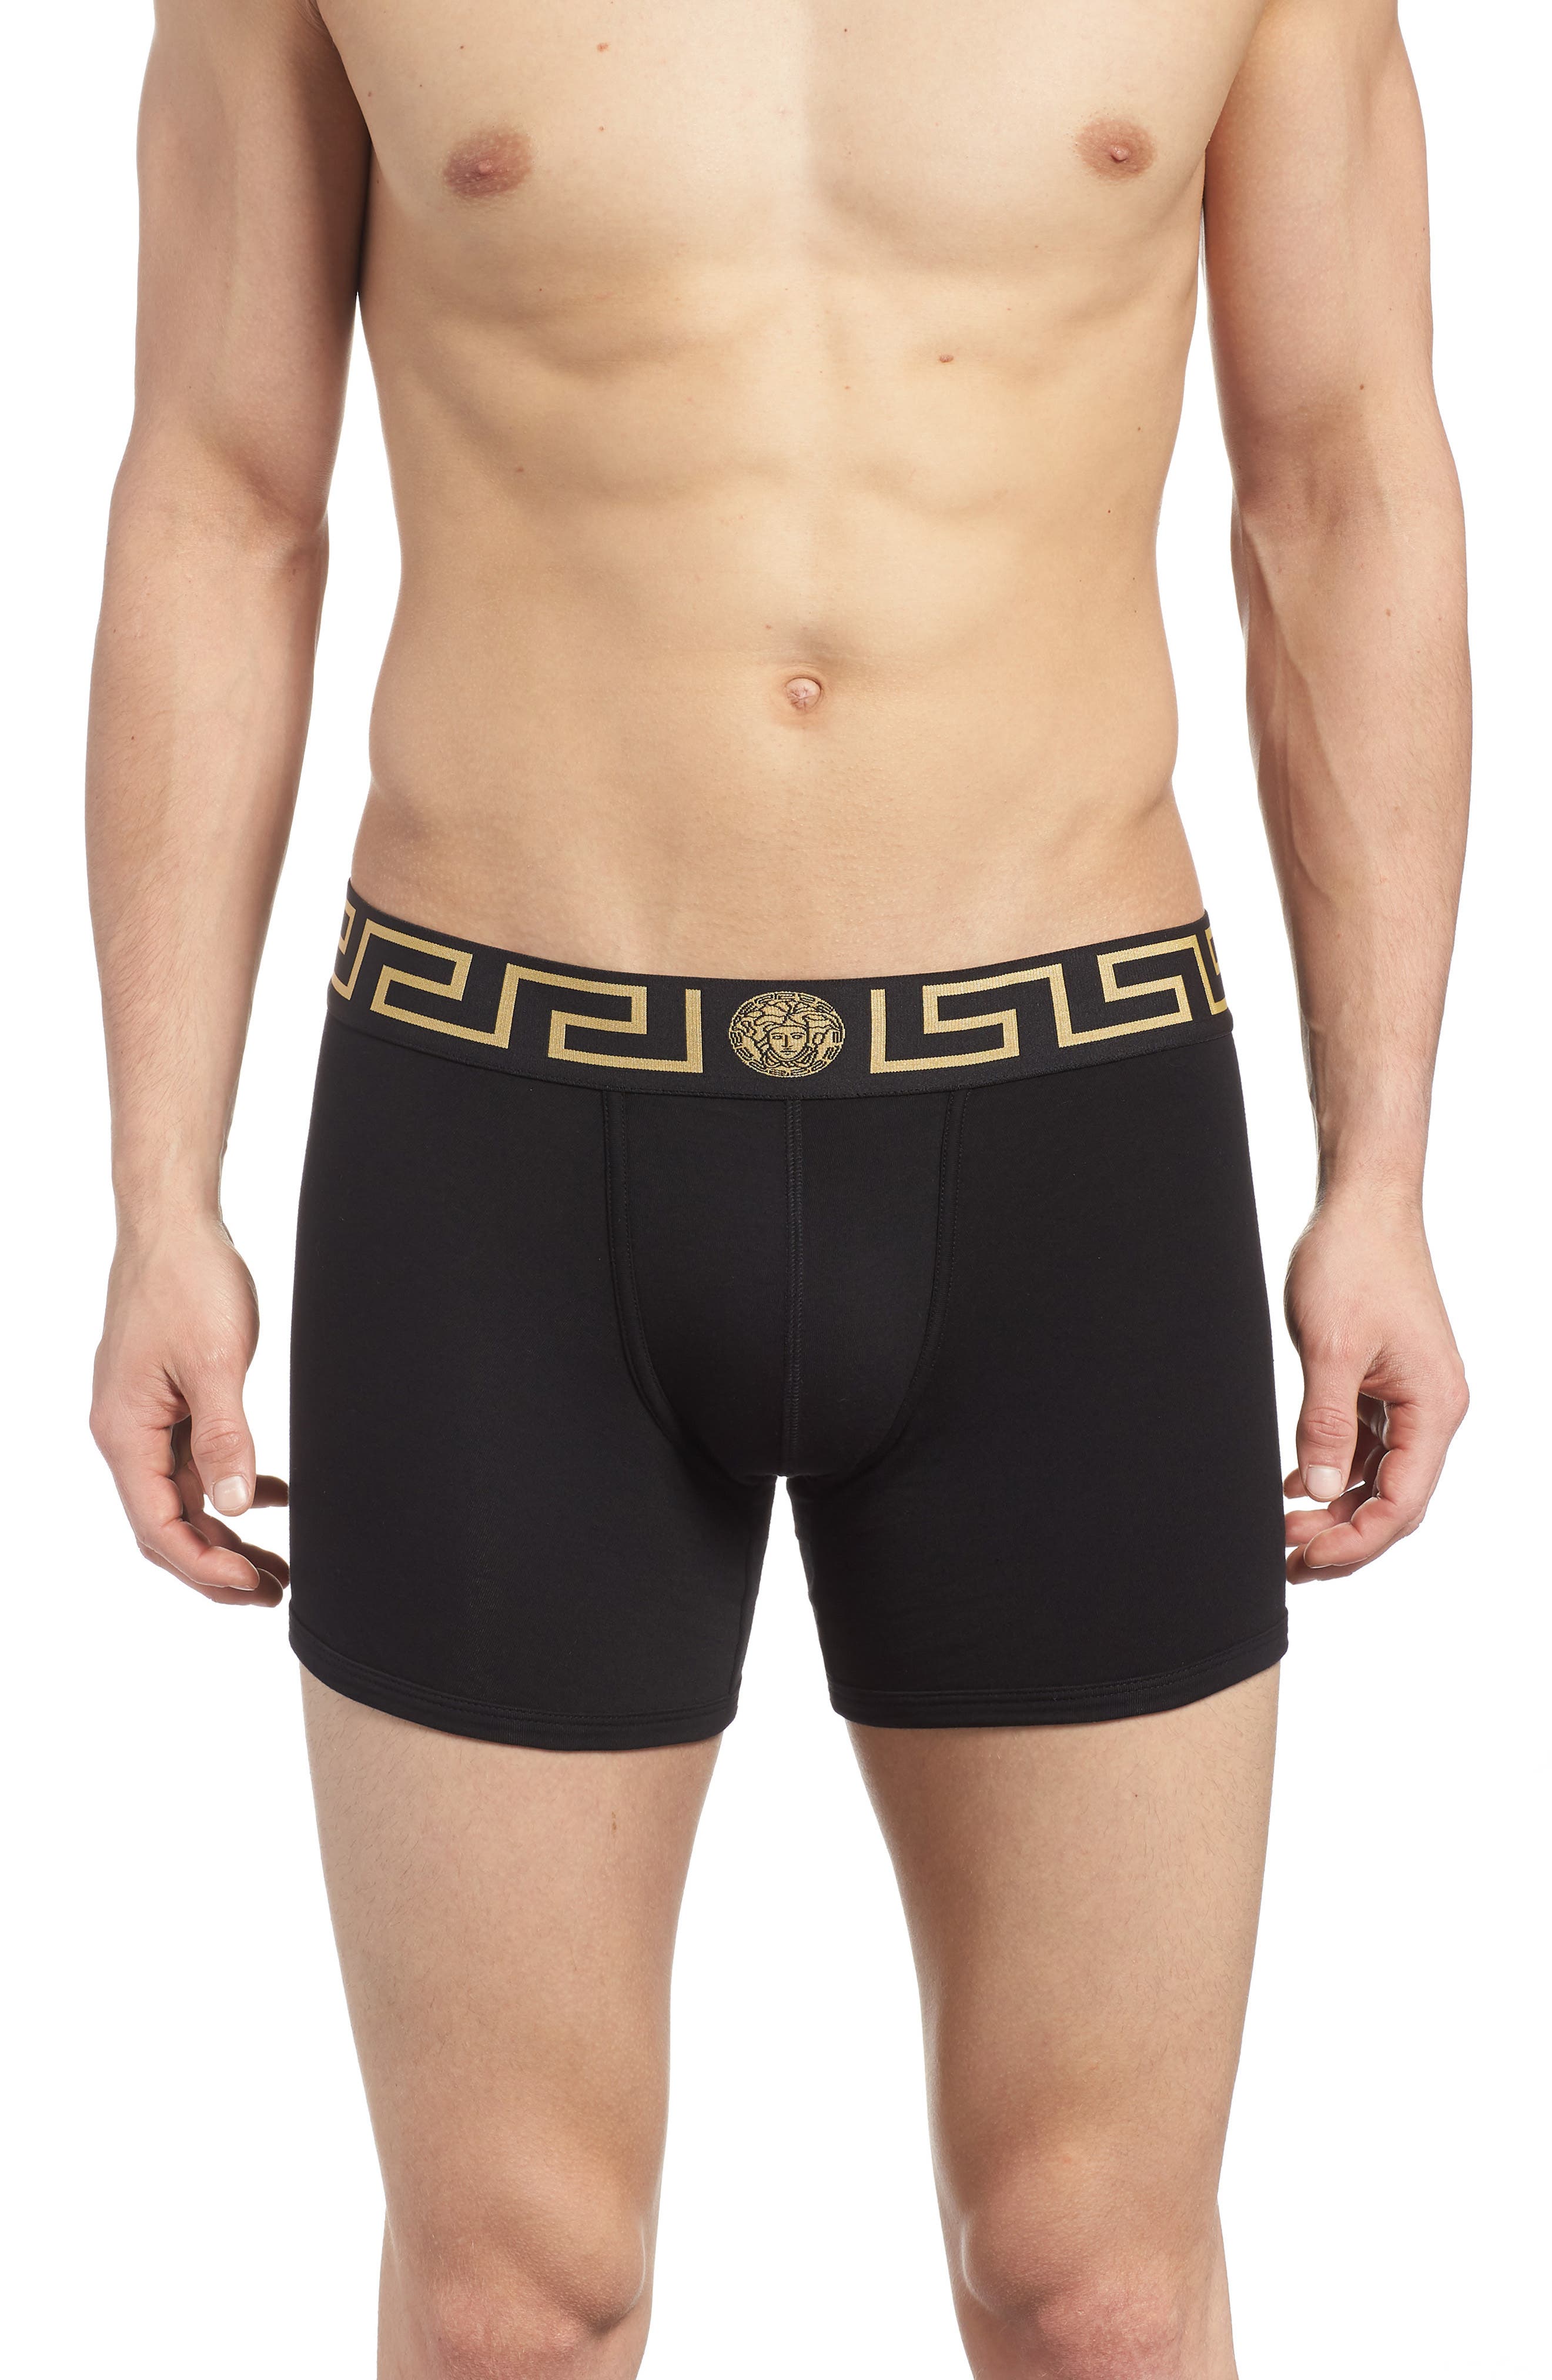 versace trunk underwear